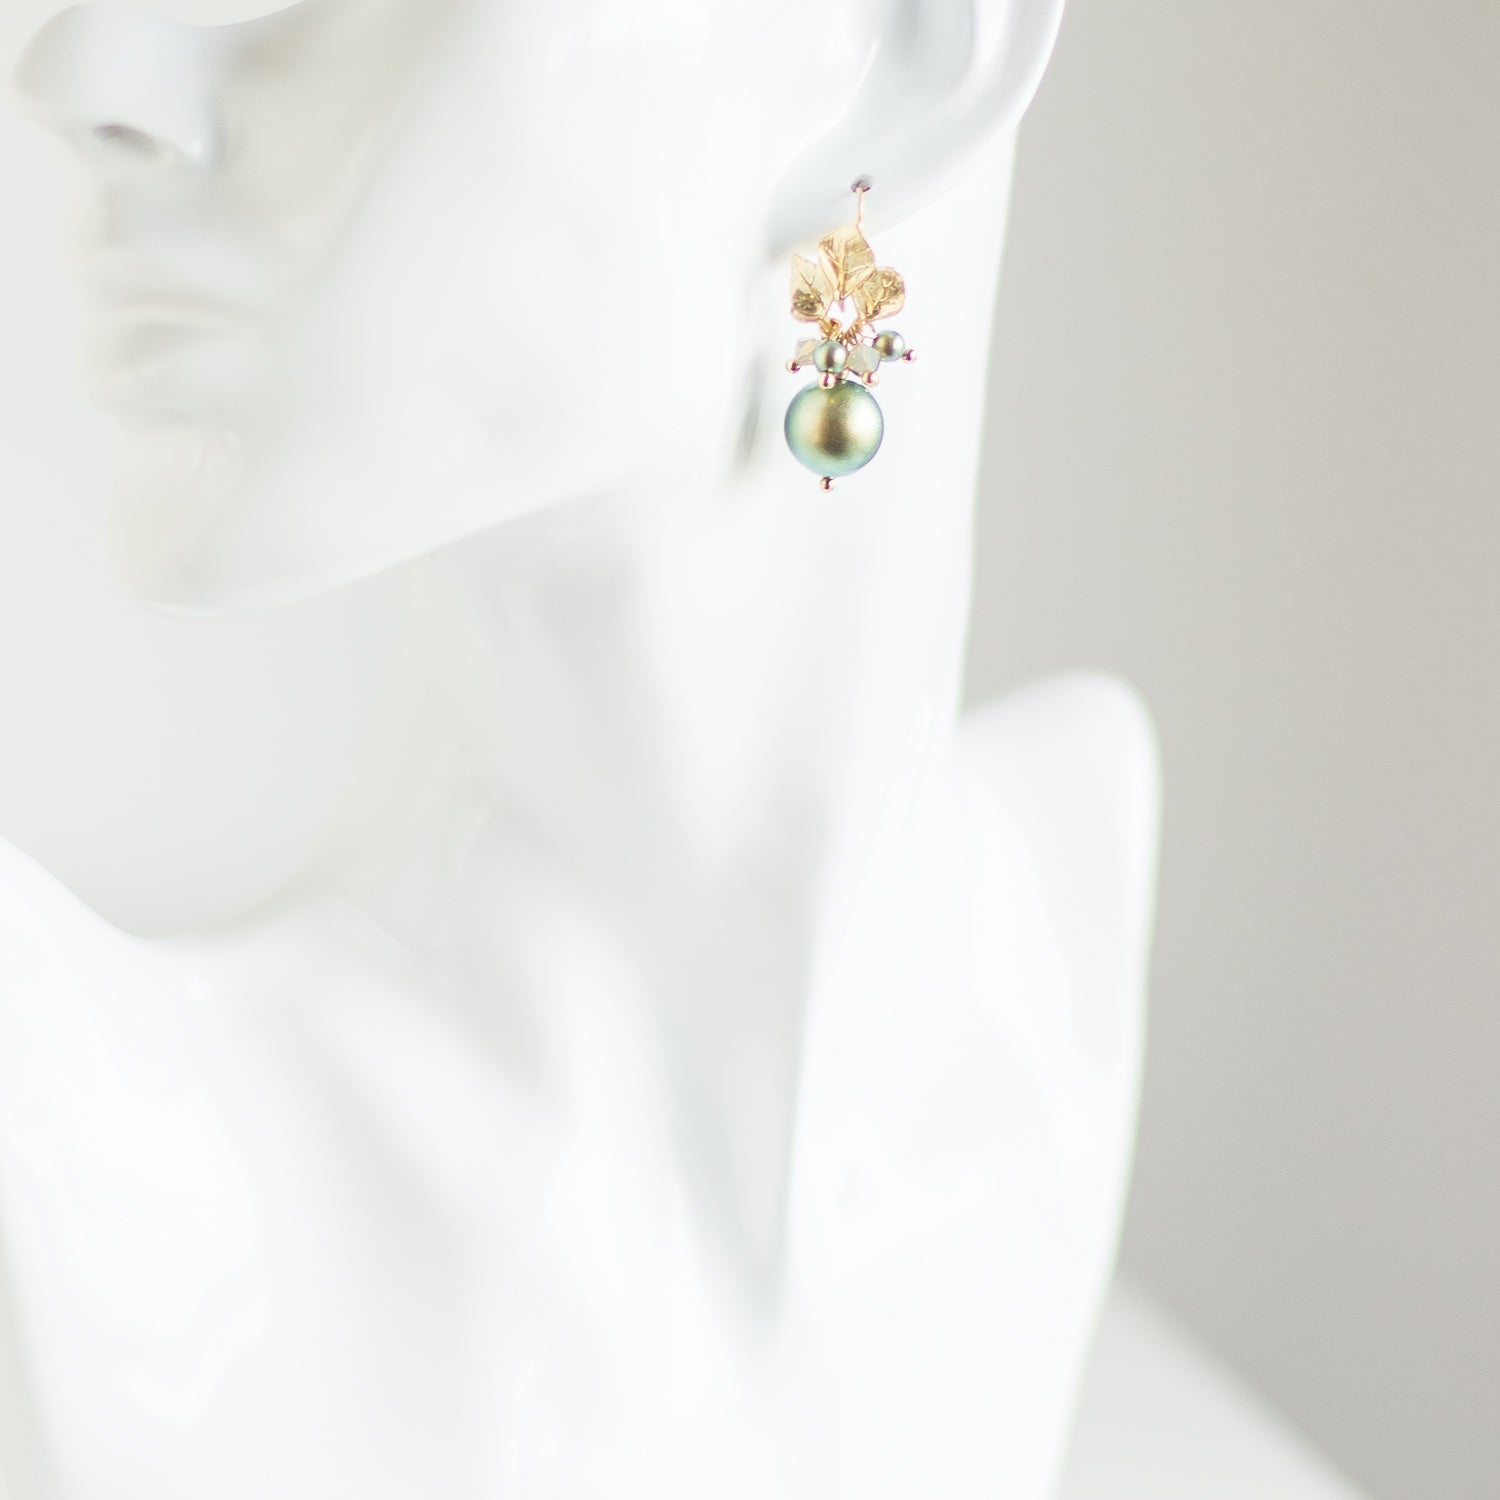 Pearl earrings. Golden earrings. Green earrings. Dangle earrings. Drop earrings. Cluster earrings with Swarovski pearls